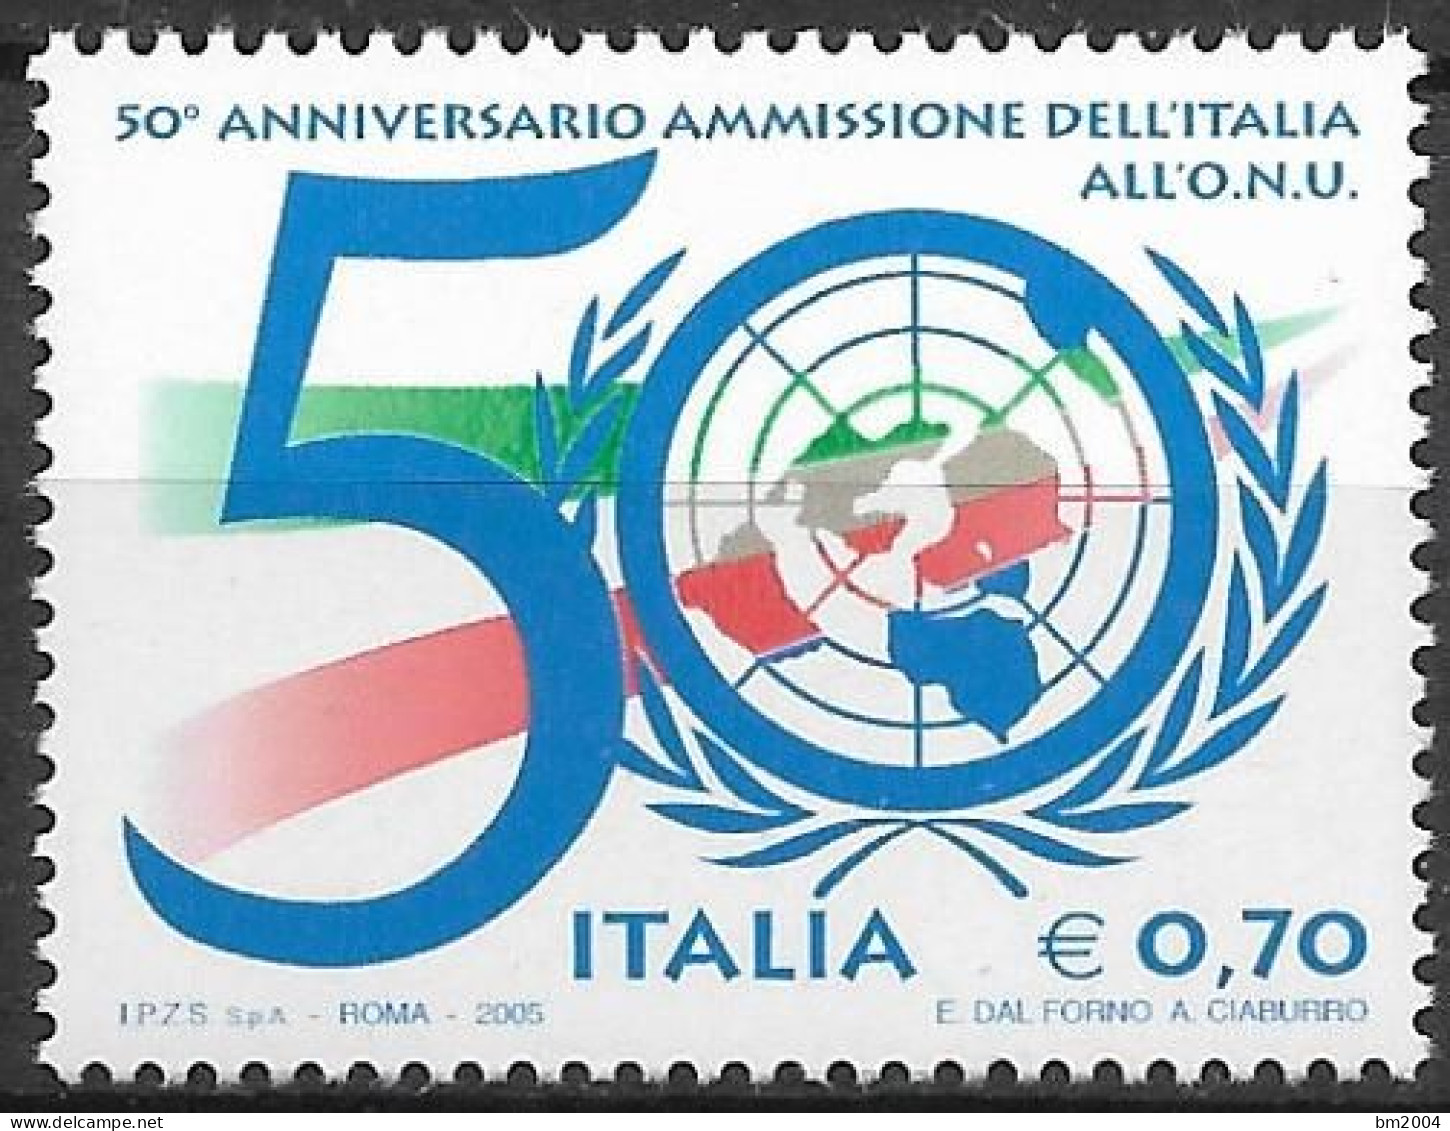 2005  Italien  Mi. 3068**MNH   50. Jahrestag Der Aufnahme Italiens In Die Vereinten Nationen (UNO). - 2001-10: Neufs